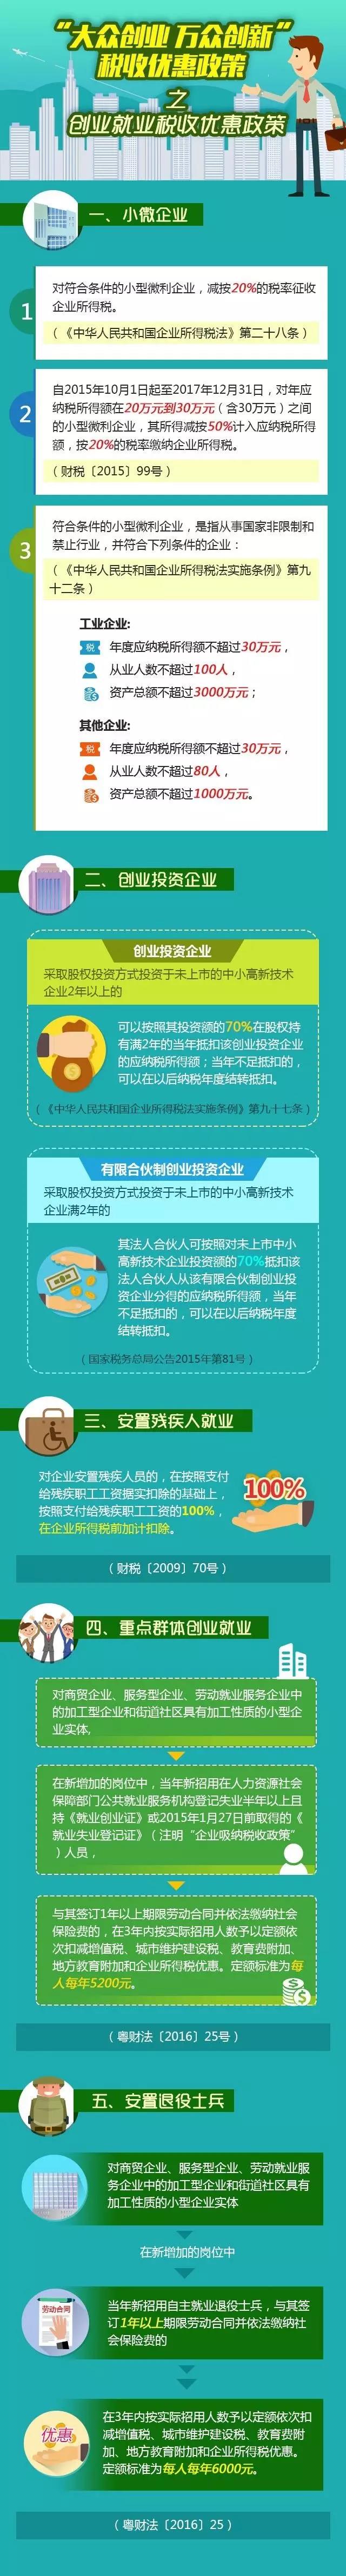 大学创业孵化器政策_上海 创业 政策_大学生创业政策